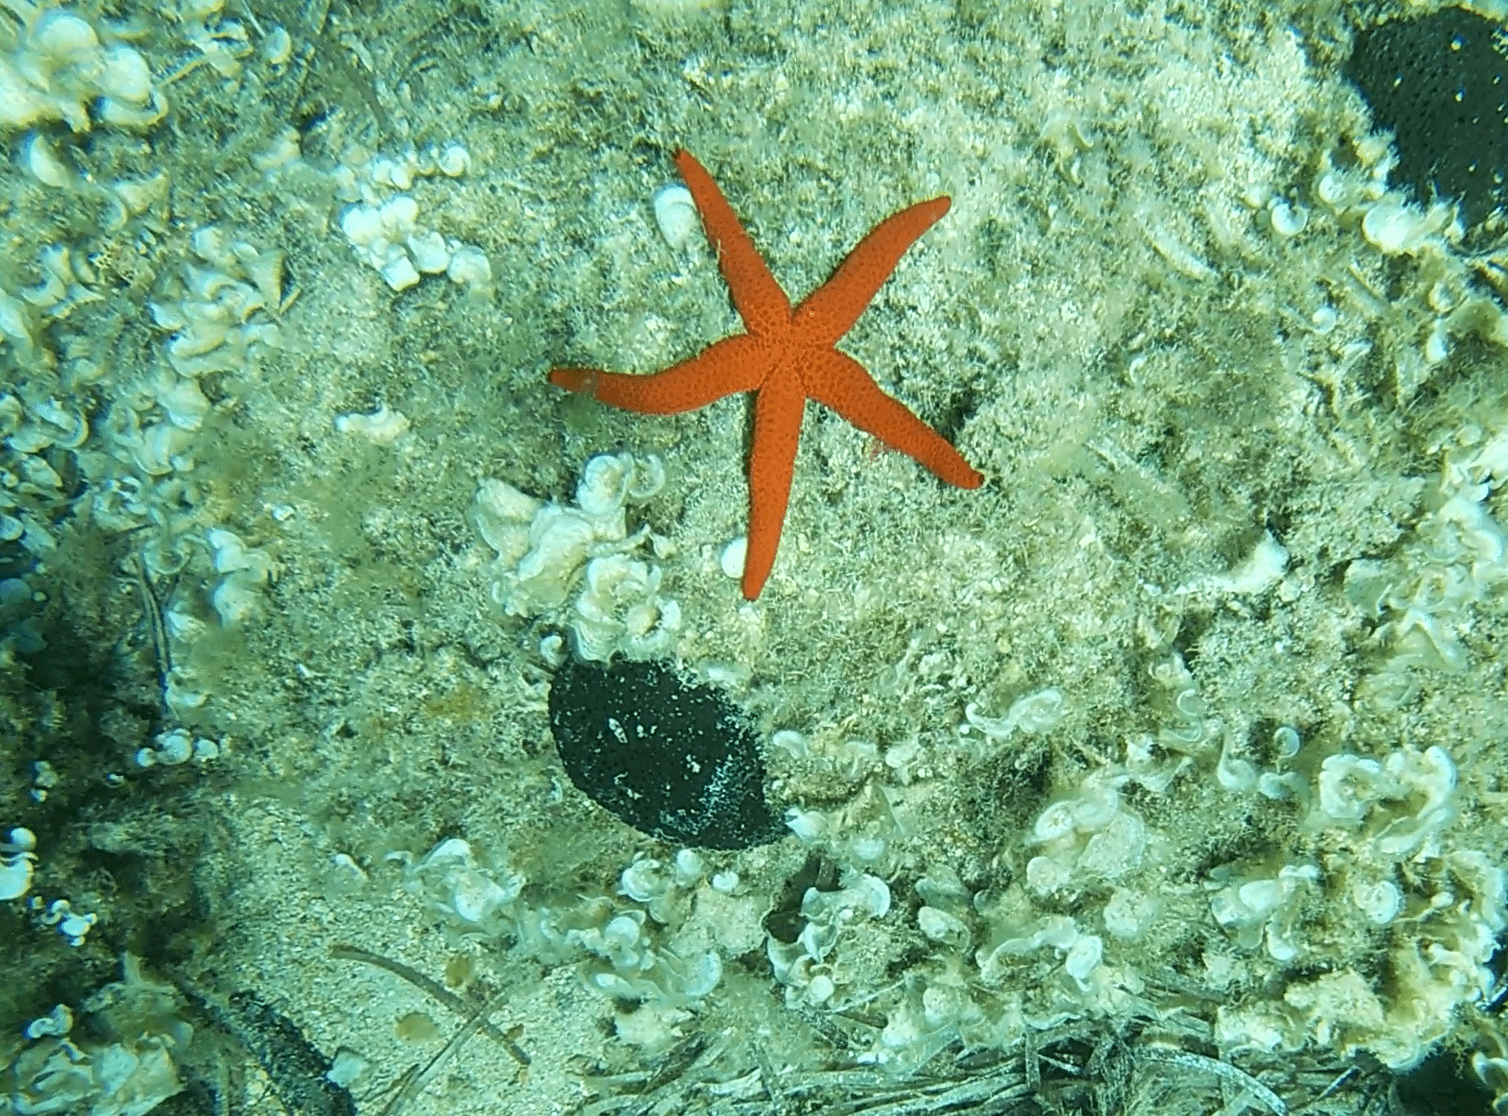 Mediterranean red sea star